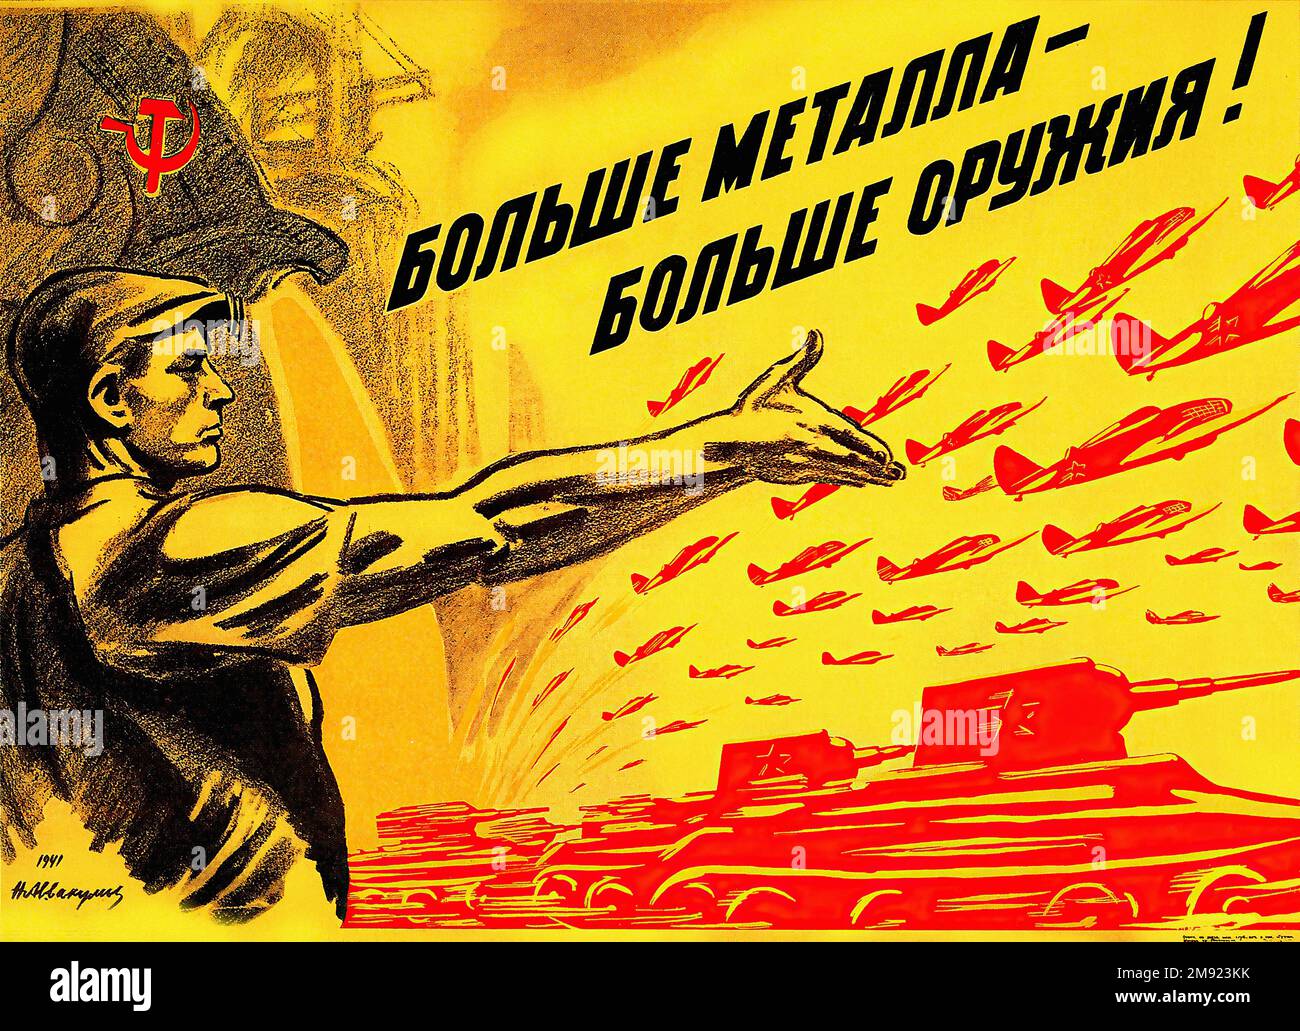 1941 - più metallo significa più armi! (Tradotto dal russo) - poster della propaganda sovietica dell'URSS d'epoca Foto Stock